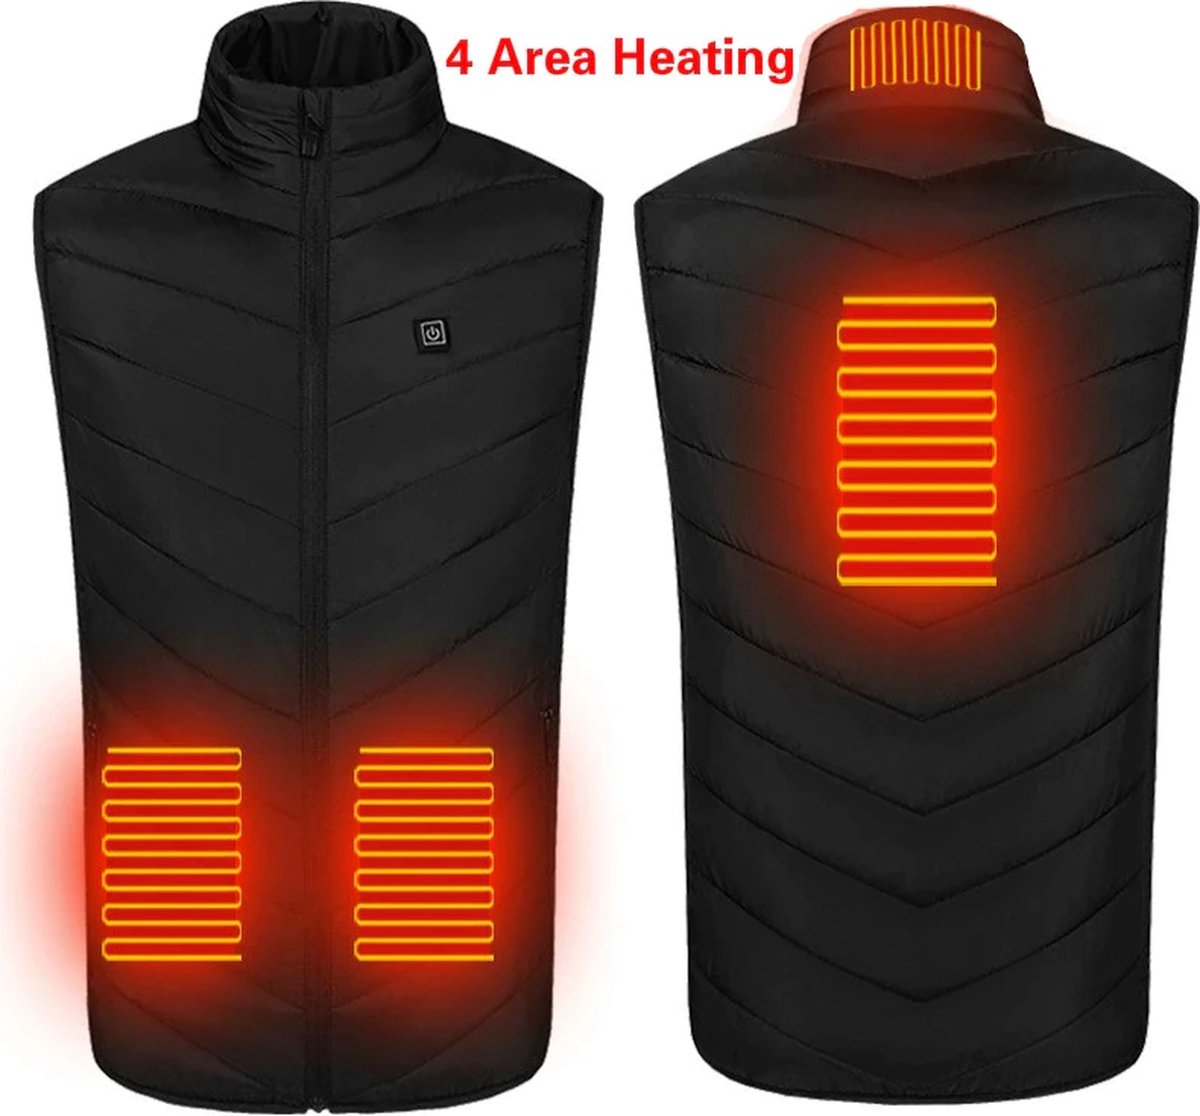 verwarmde bodywarmer - verwarmd vest - warmte vest - elektrisch verwarmd vest - verwarmde kleding - verwarmde jas - thermo vest - M